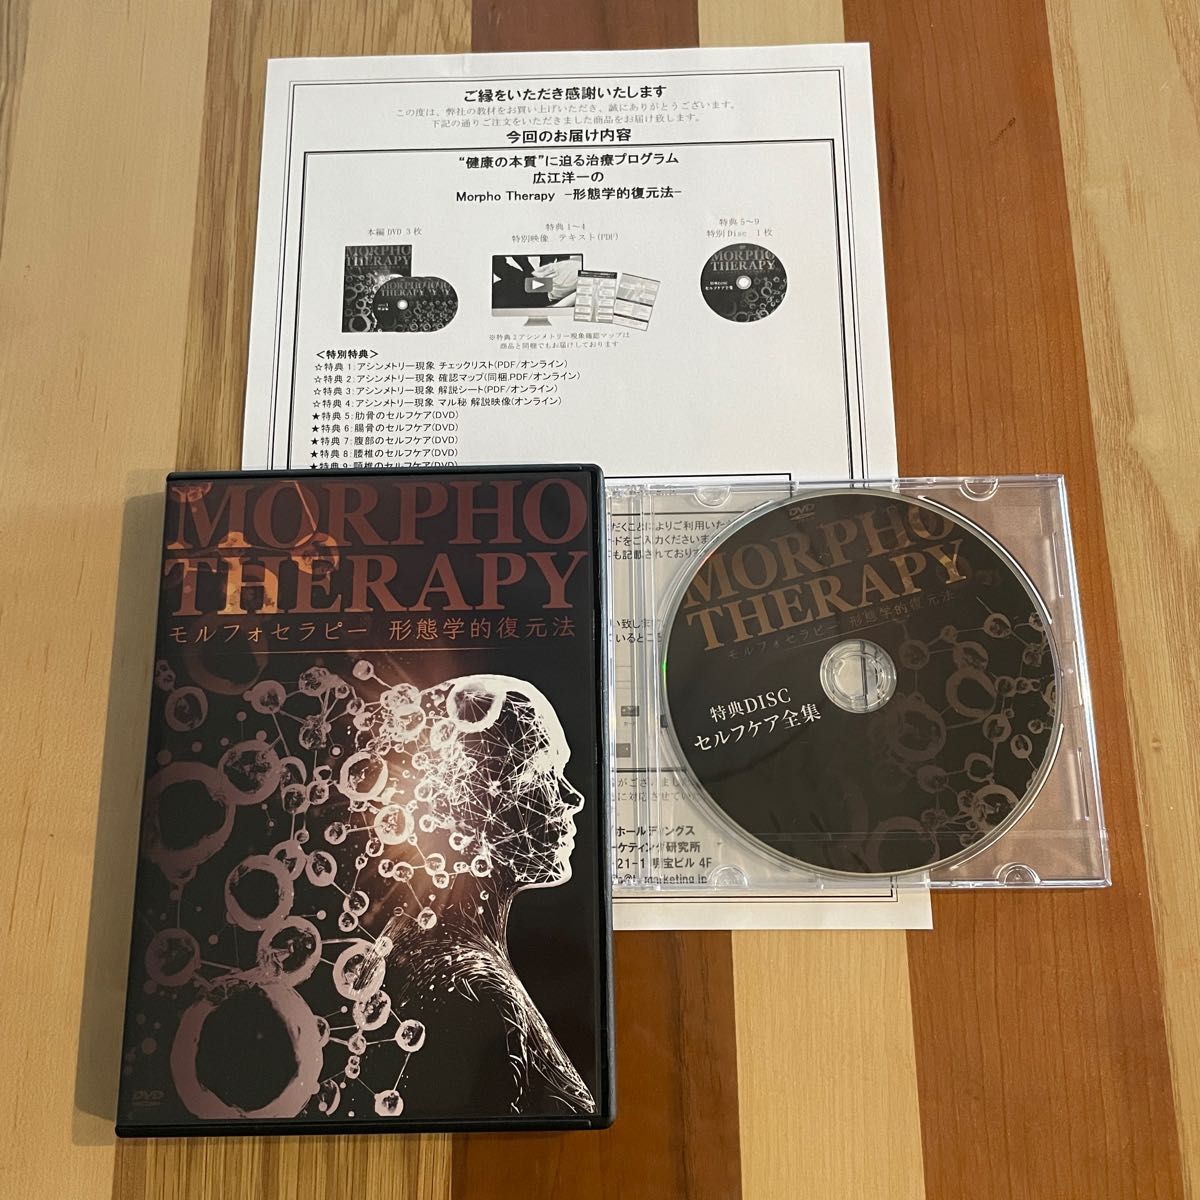 【モルフォセラピー】 広江洋一のMorpho Therapy -形態学的復元法- DVD